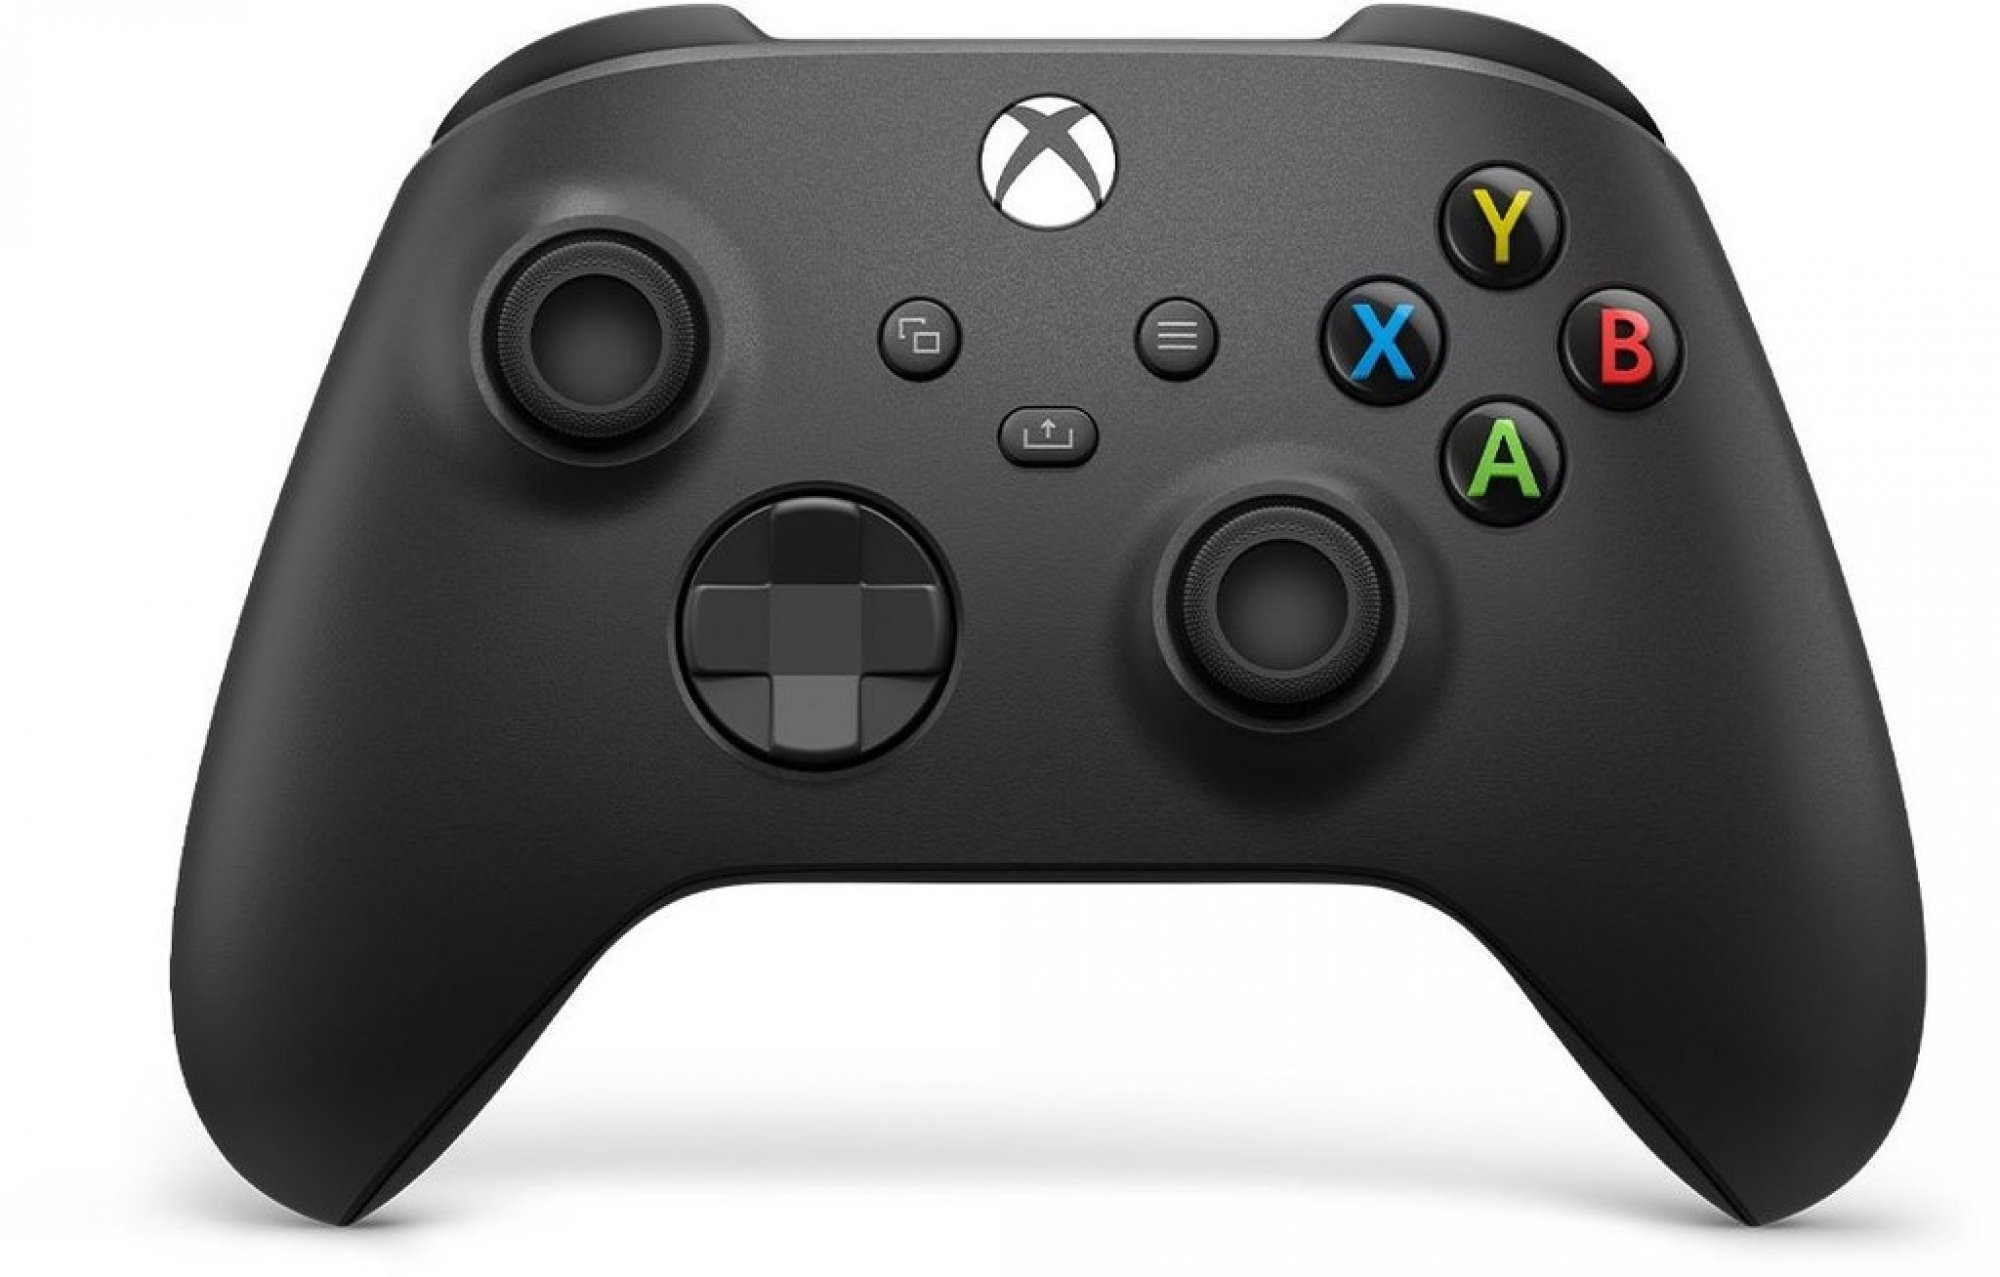 Ovladač Microsoft Xbox One Wireless Controller černý ..Odzkoušeno - Vráceno ..Náhradní krabice ..Záruka 12 měsíců ..Chybí baterie